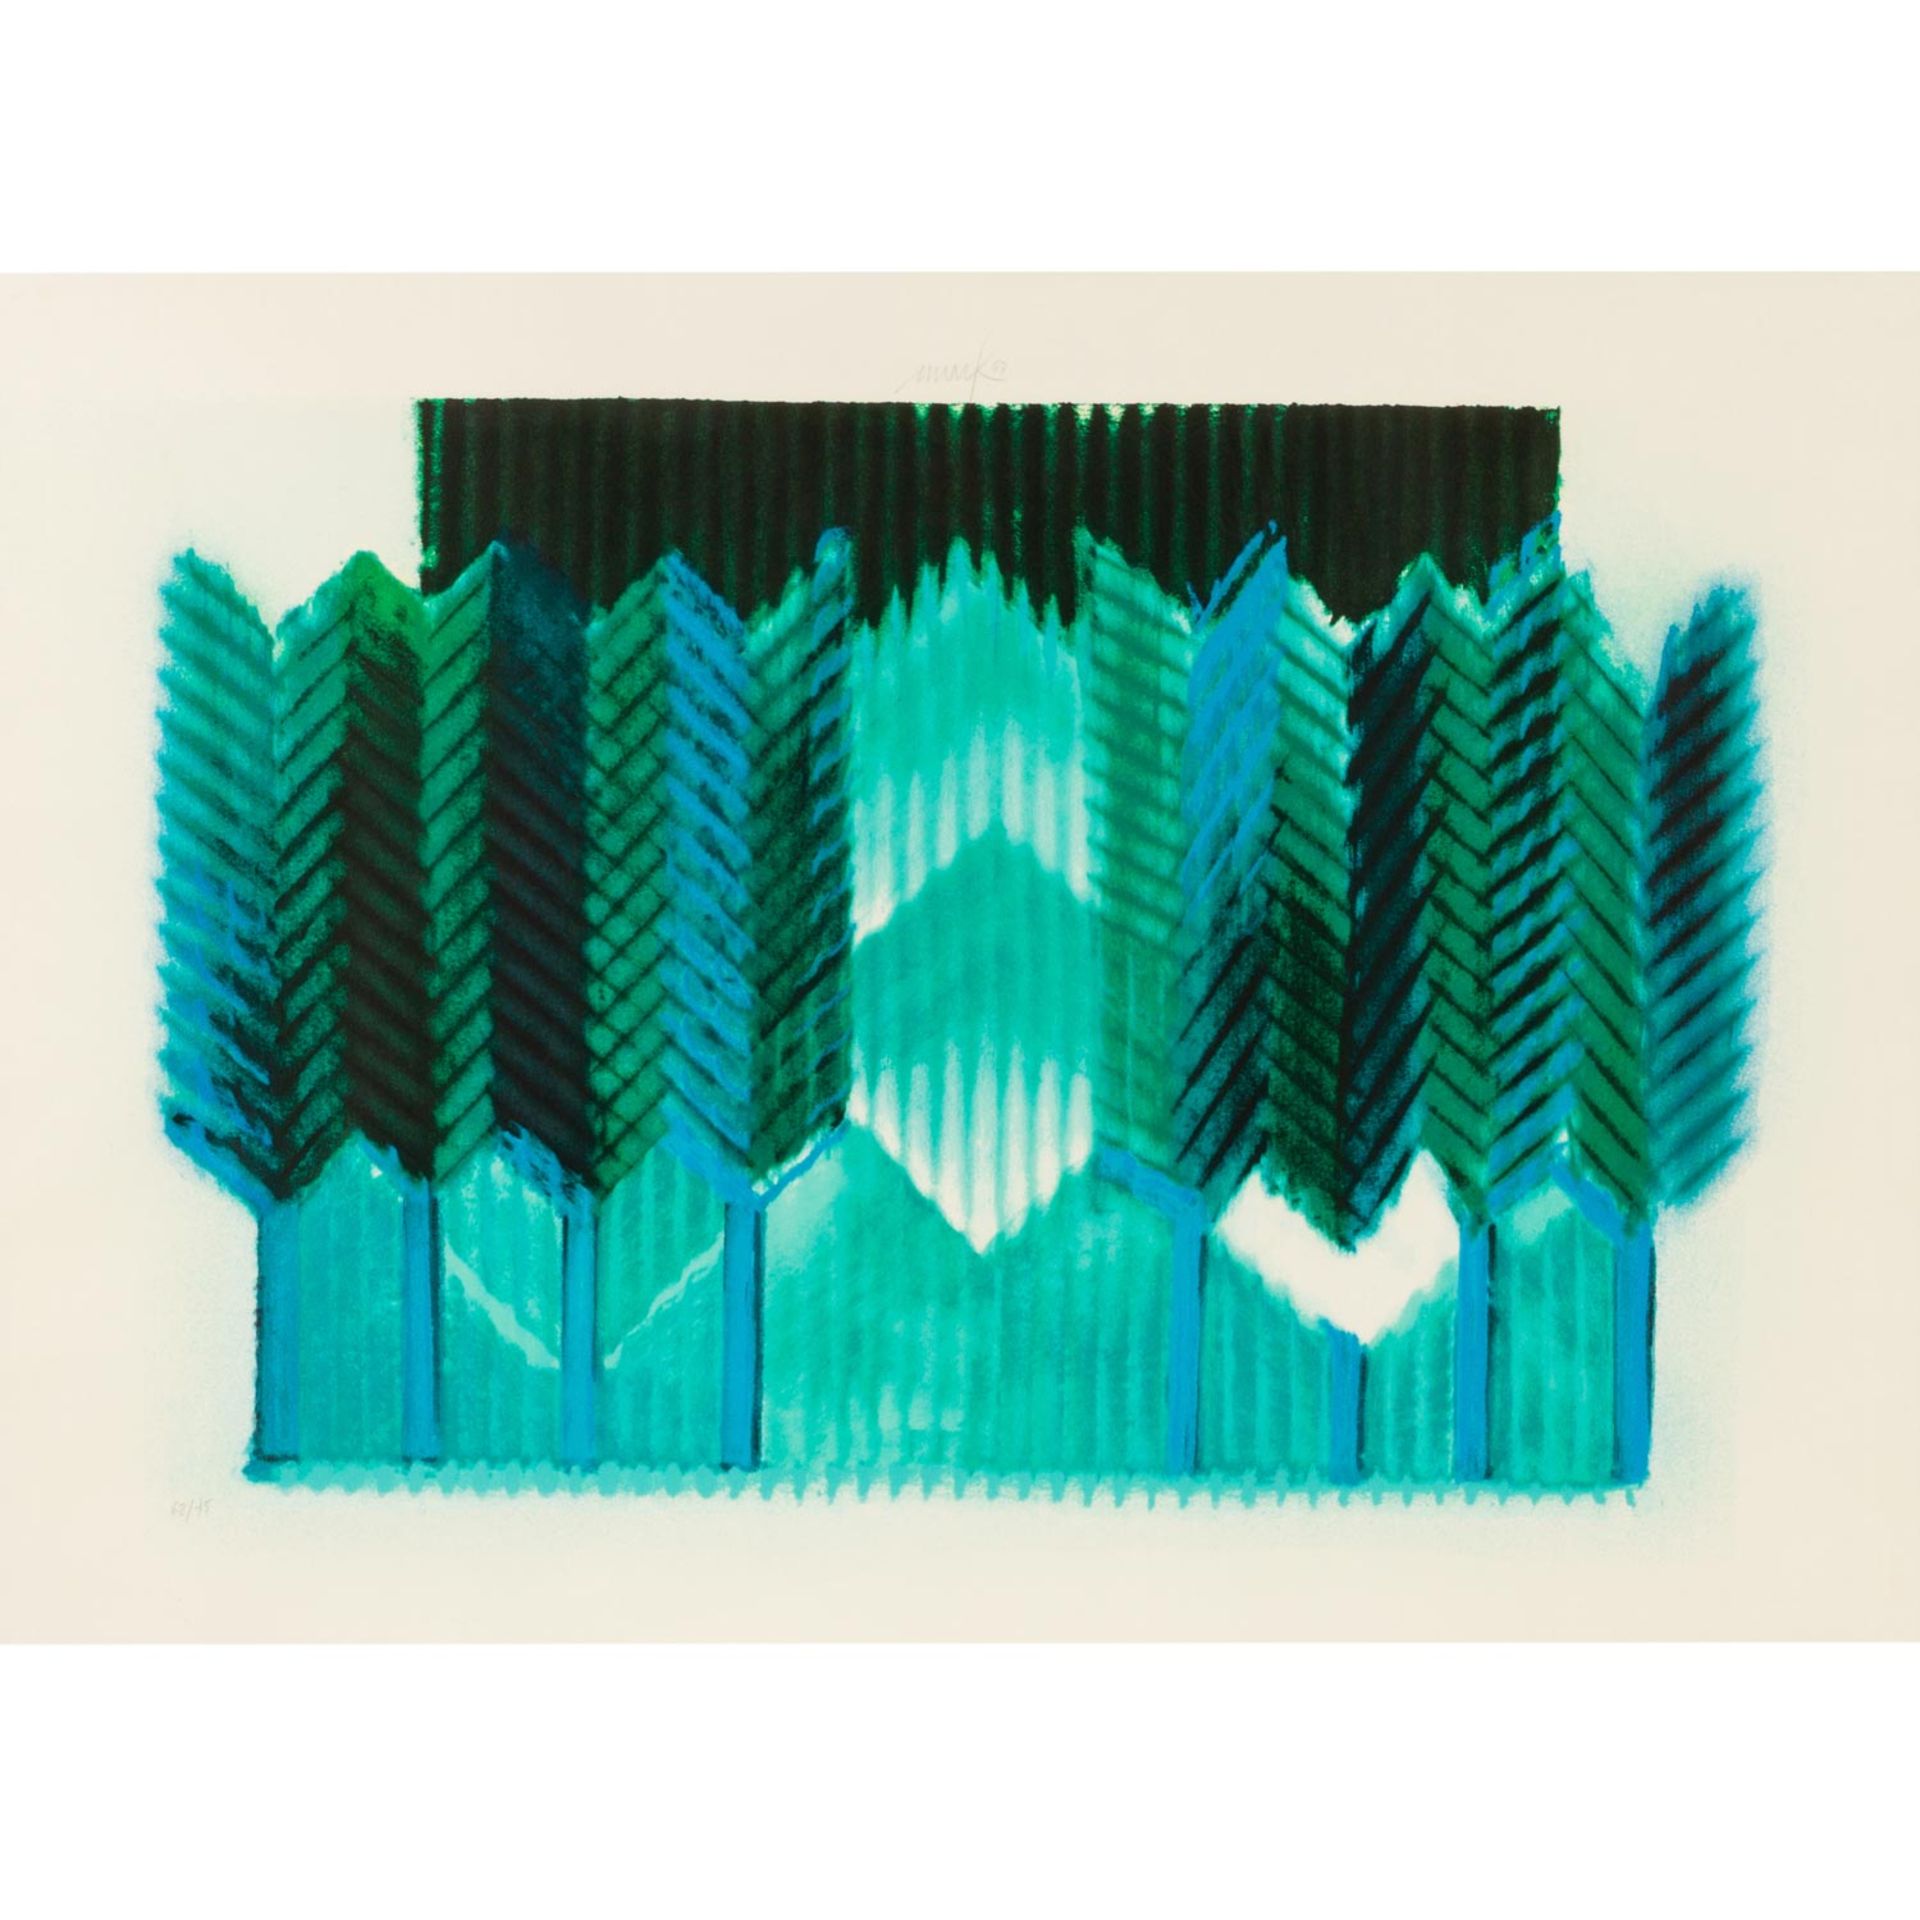 MACK, HEINZ (geb. 1931), „Das Hohelied Salomo“,abstrakte Komposition in Grün- und Blautönen,